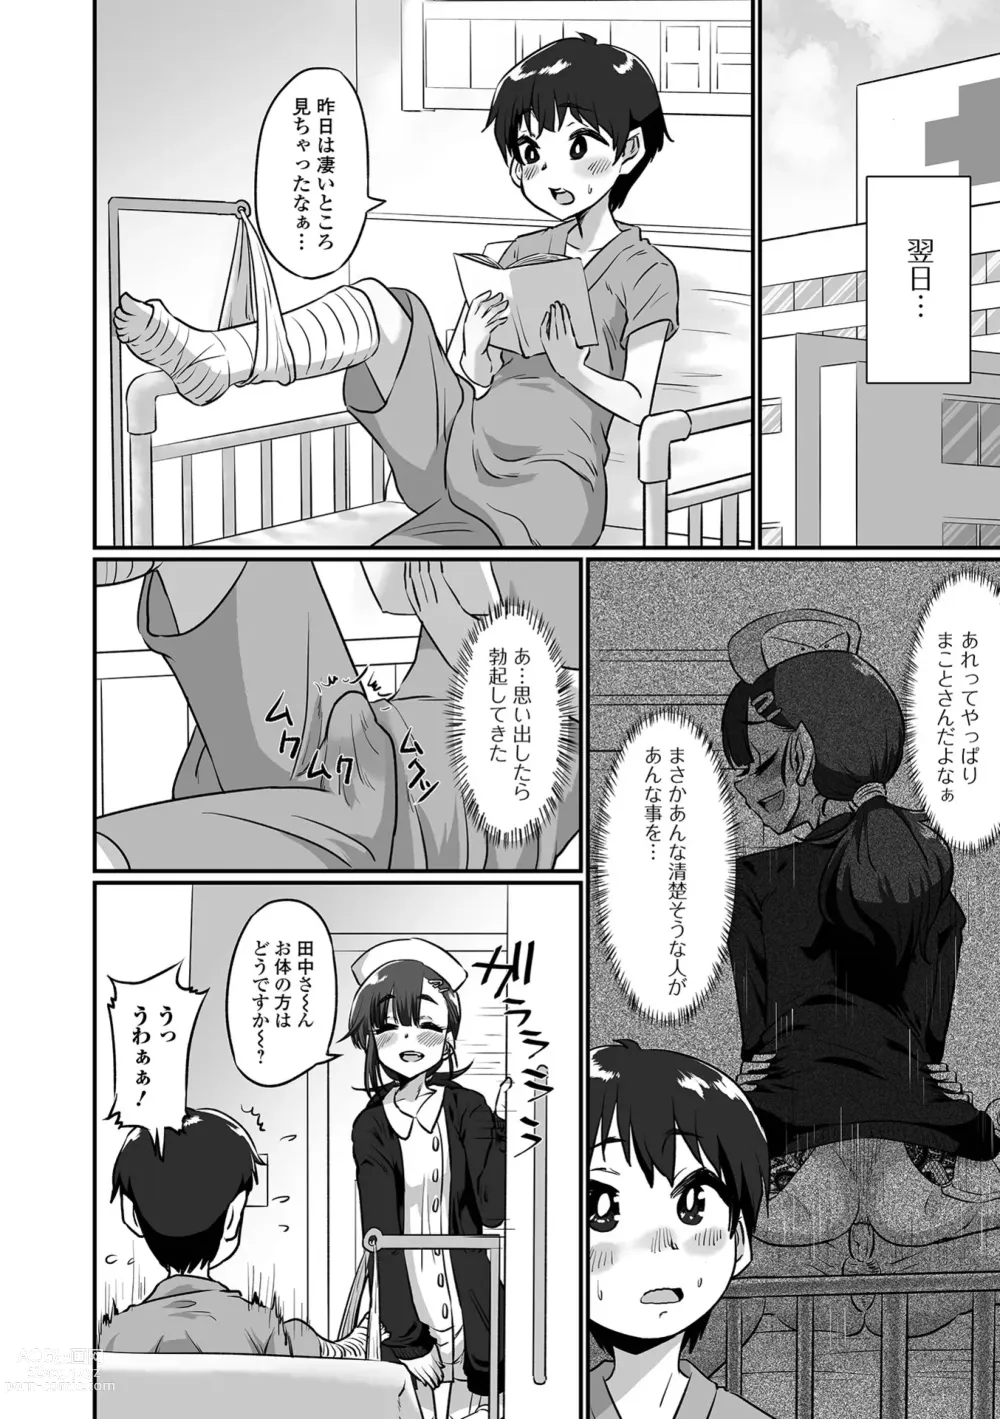 Page 86 of manga Kawaii Otokonoko wa Suki Desuka?